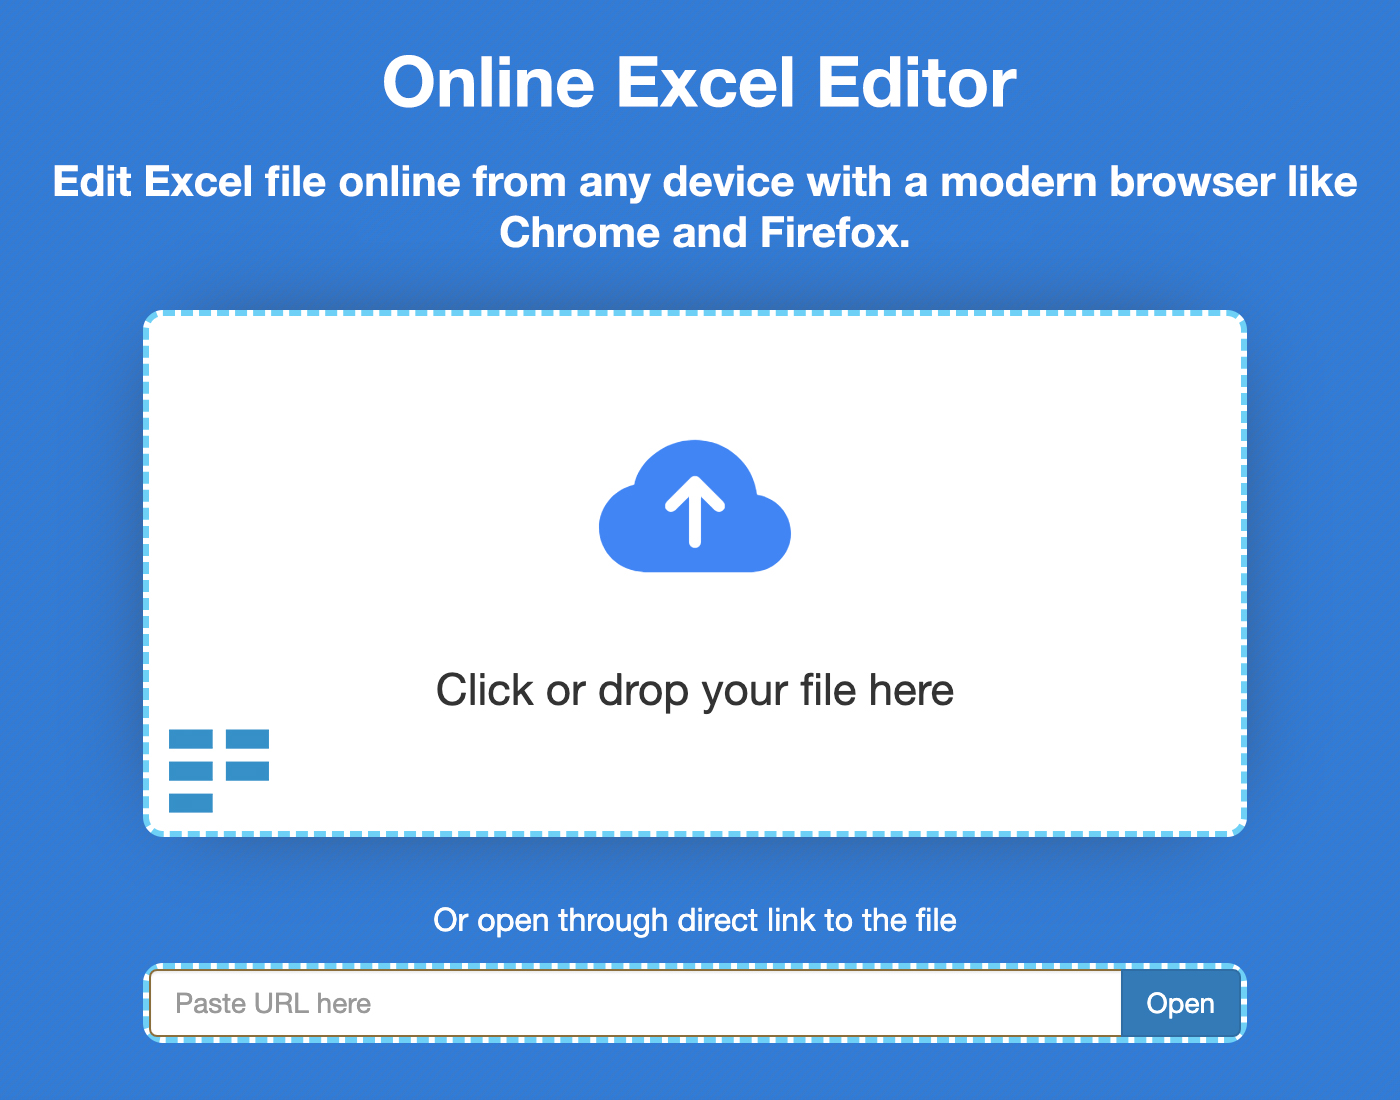 線上編輯 Excel 電子表格